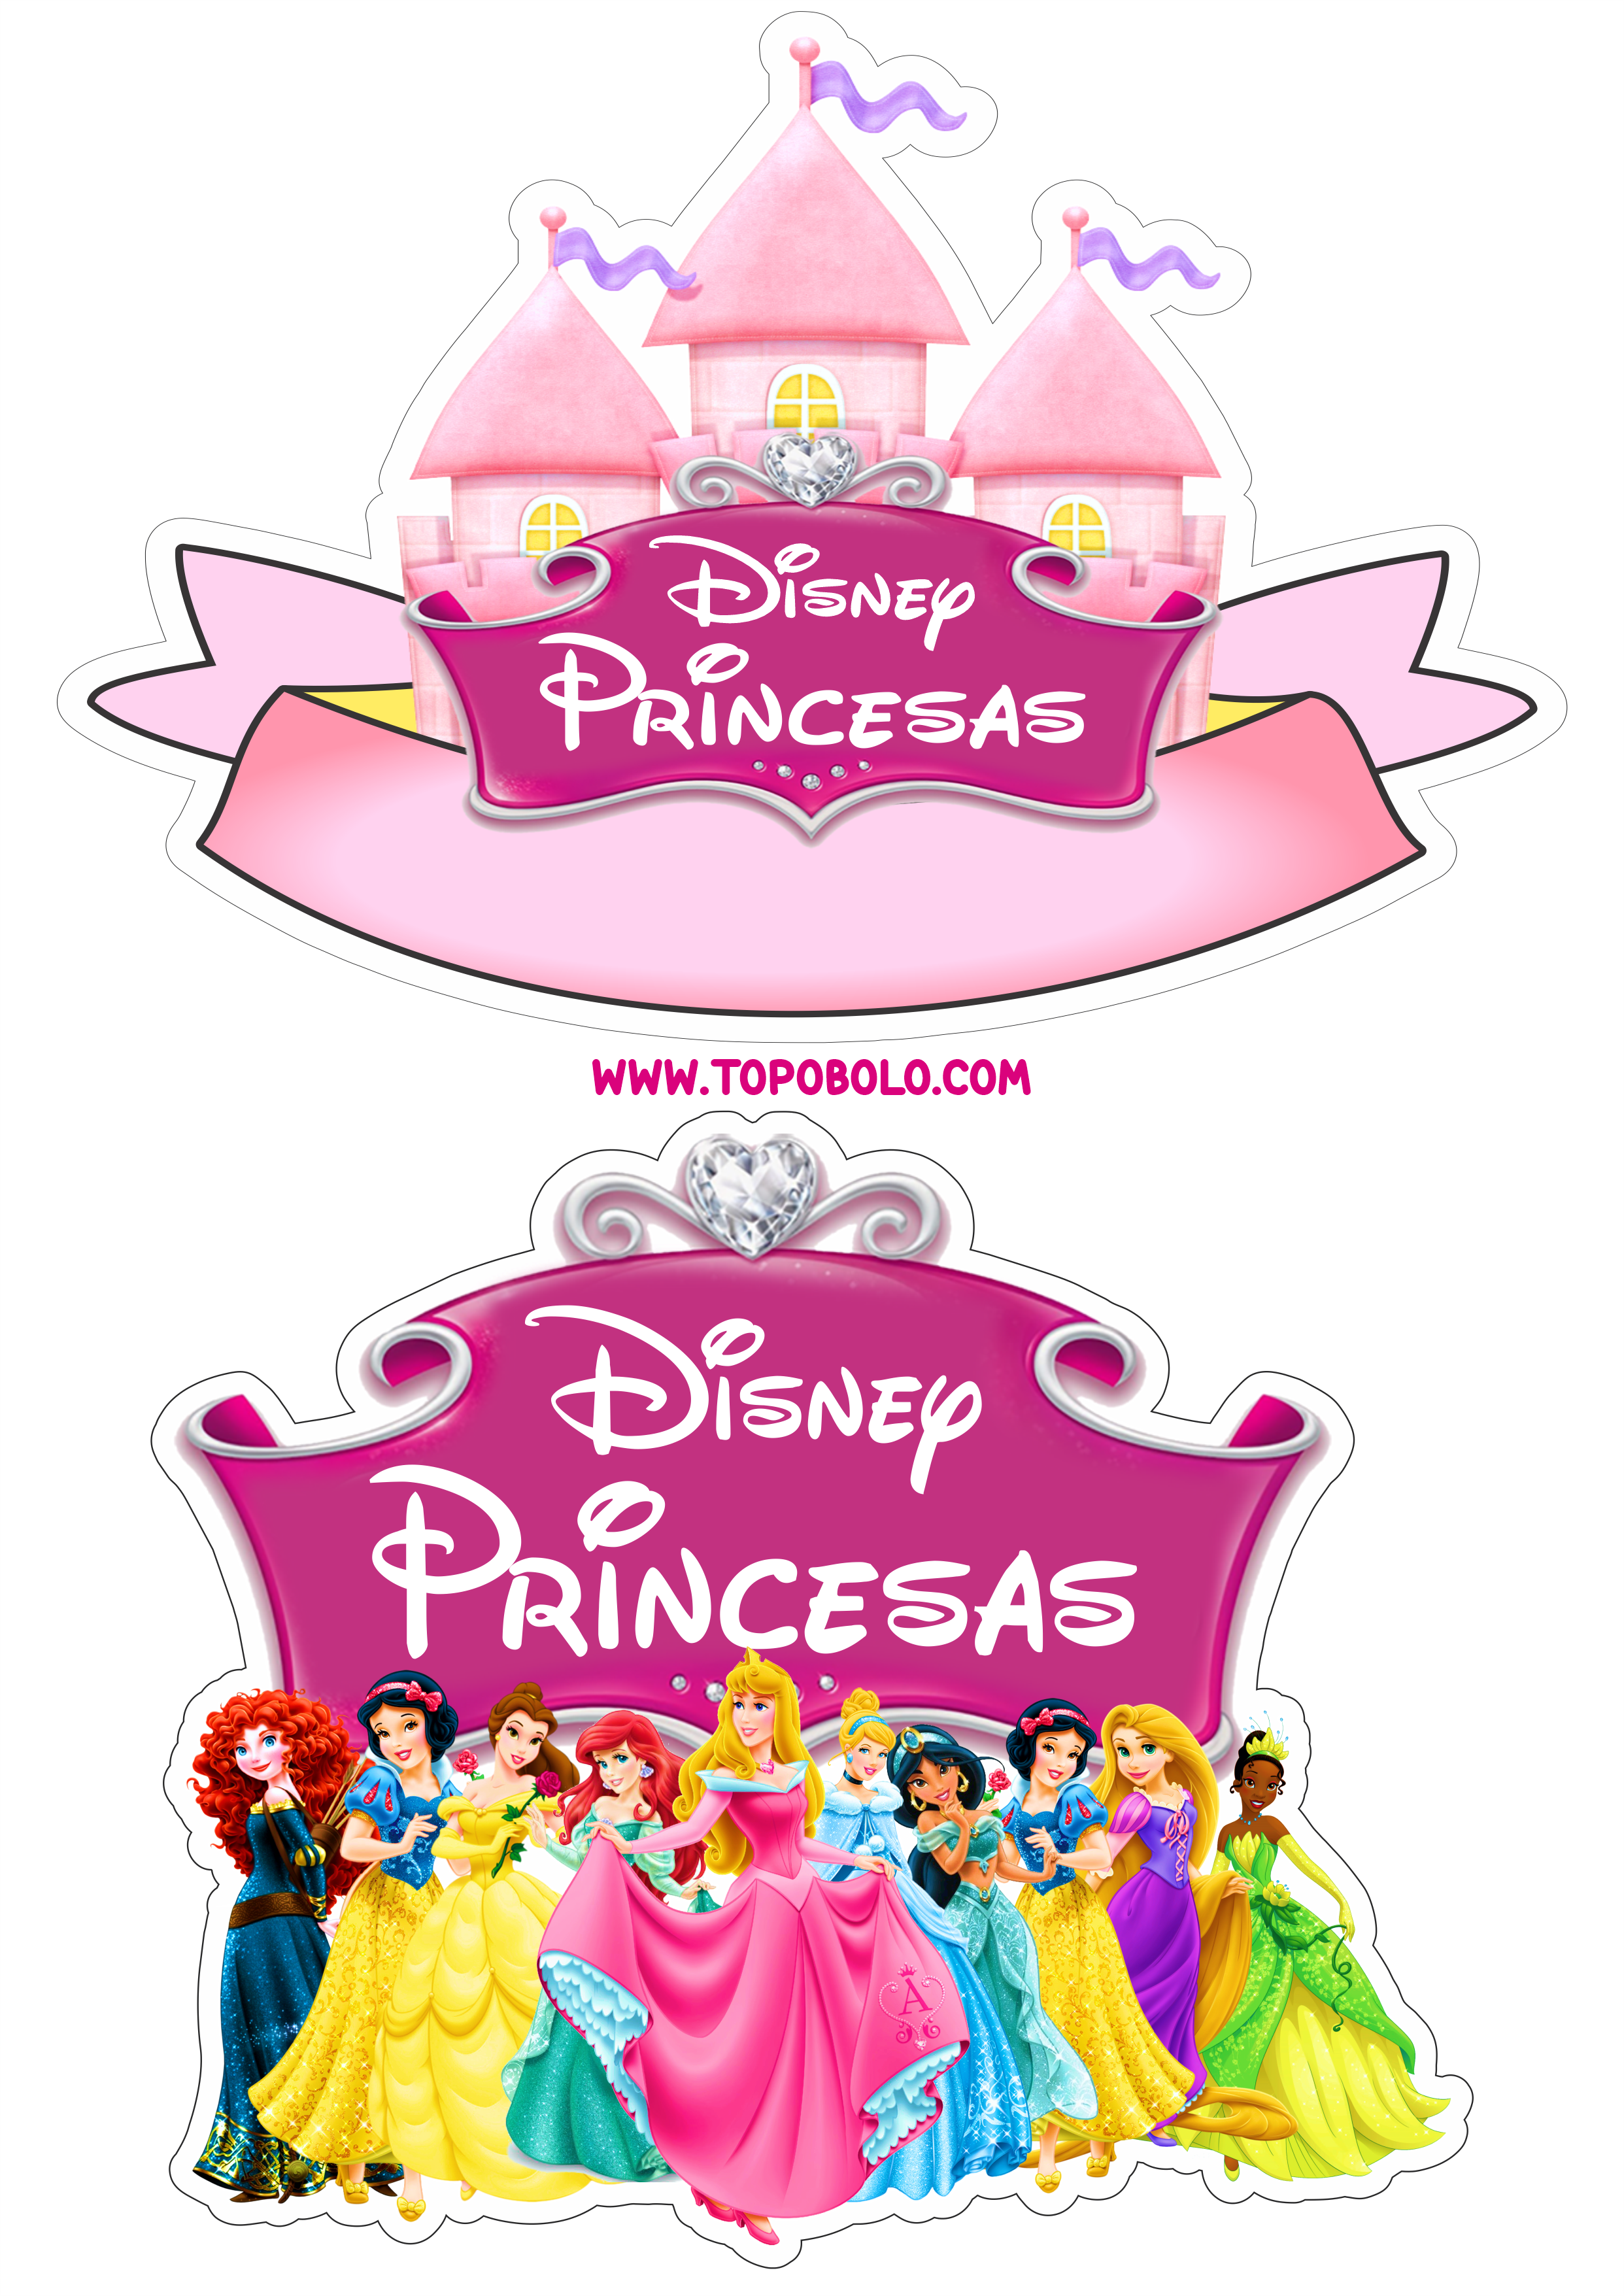 Princesas Disney topo de bolo pronto para imprimir aniversário infantil papelaria criativa artes gráficas png